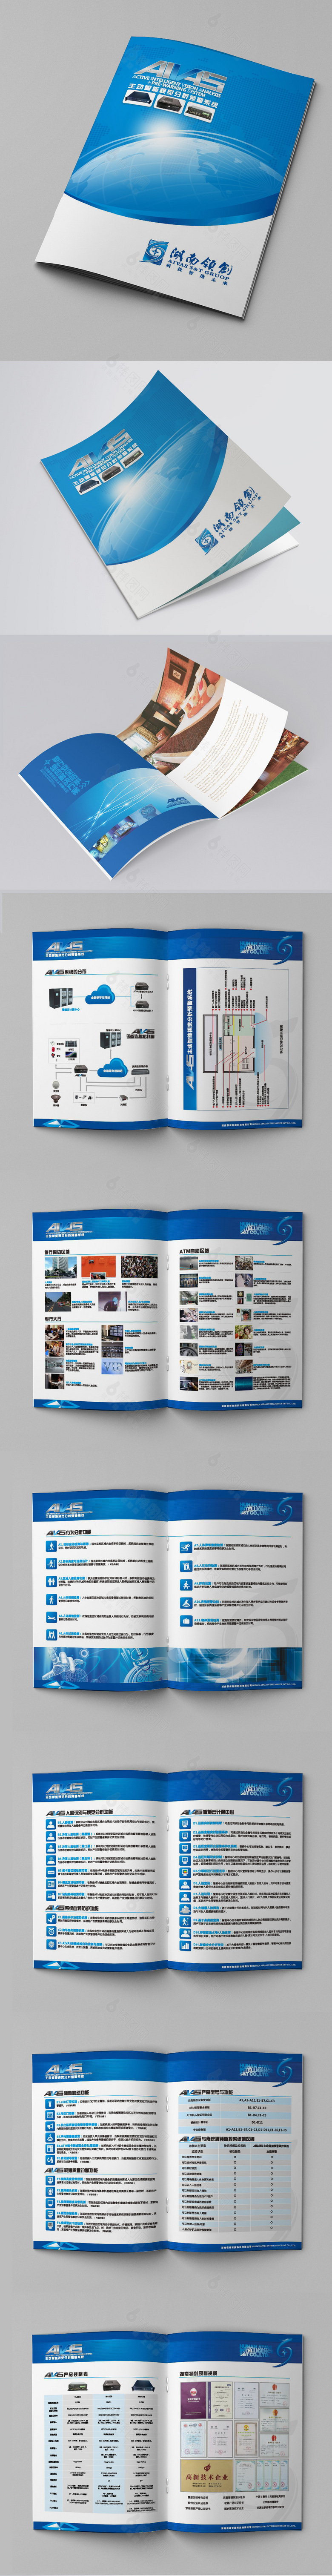 蓝色简洁产品宣传画册